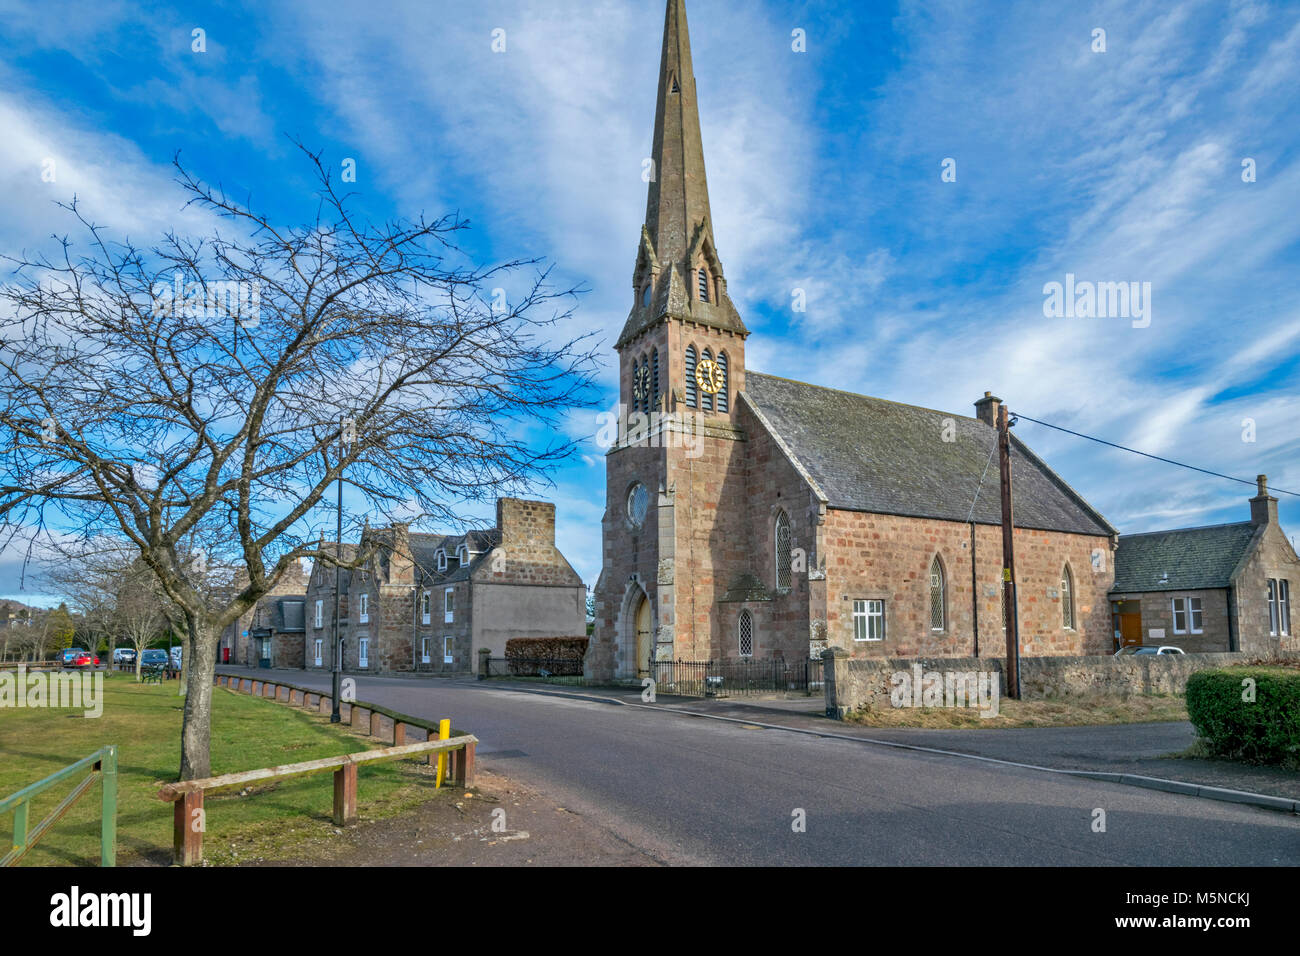 ABOYNE città della Scozia la chiesa con il campanile appuntito vicino i campi da gioco Foto Stock